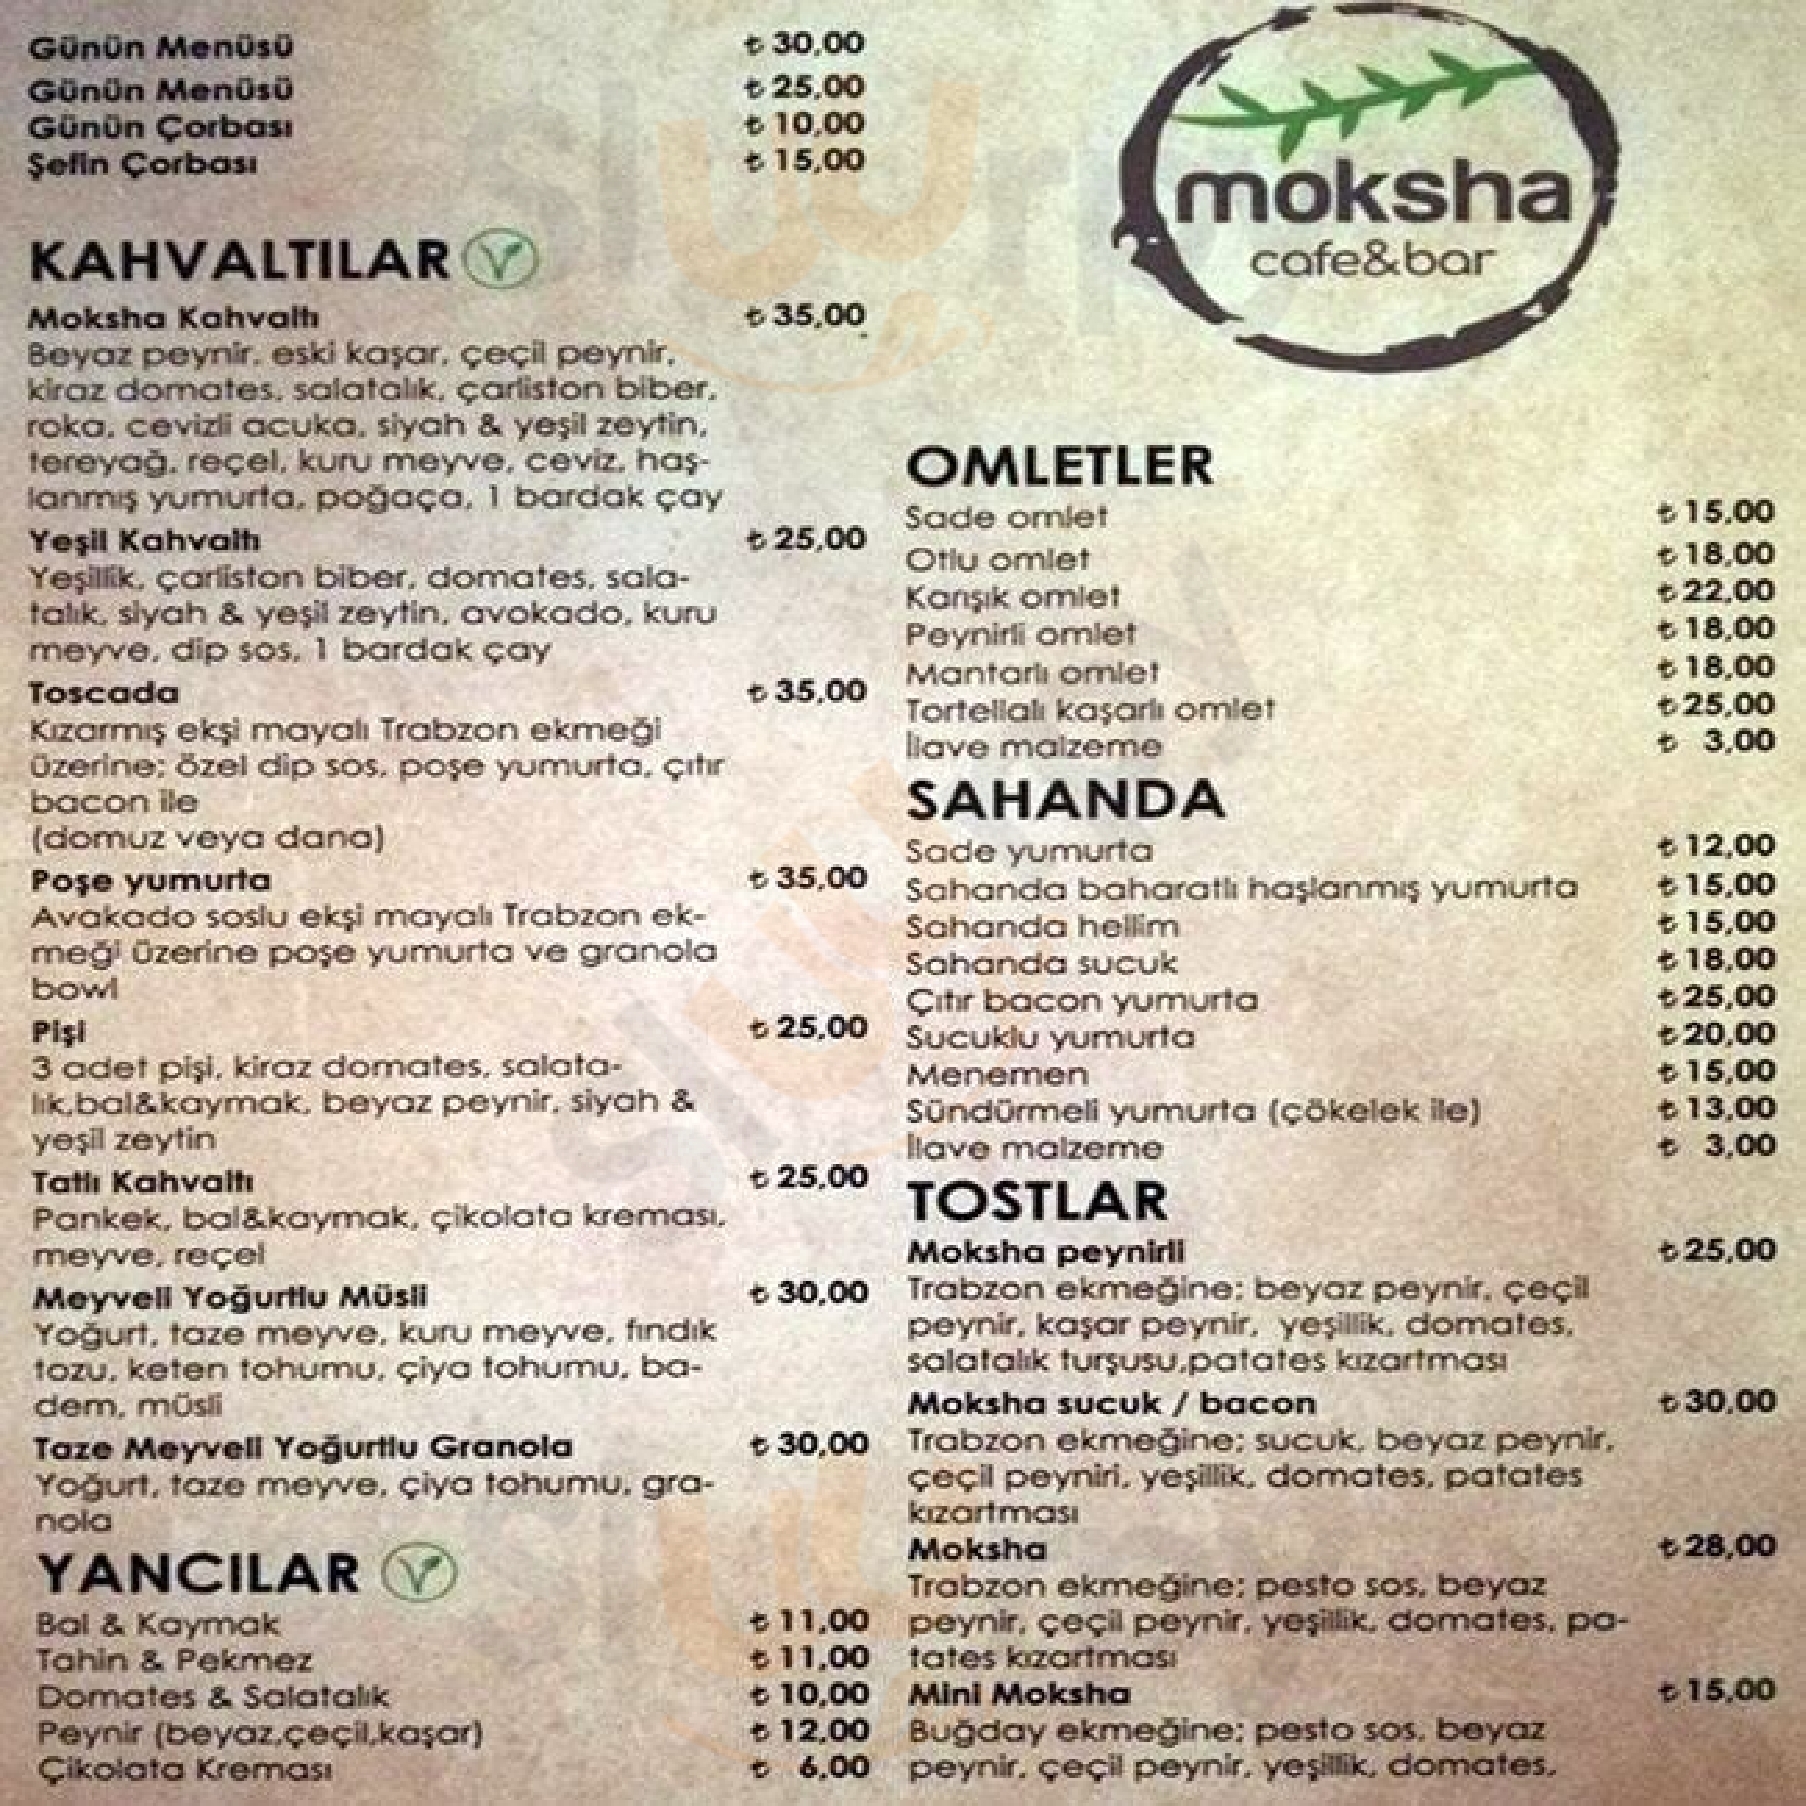 Moksha Cafe&bar İstanbul Menu - 1